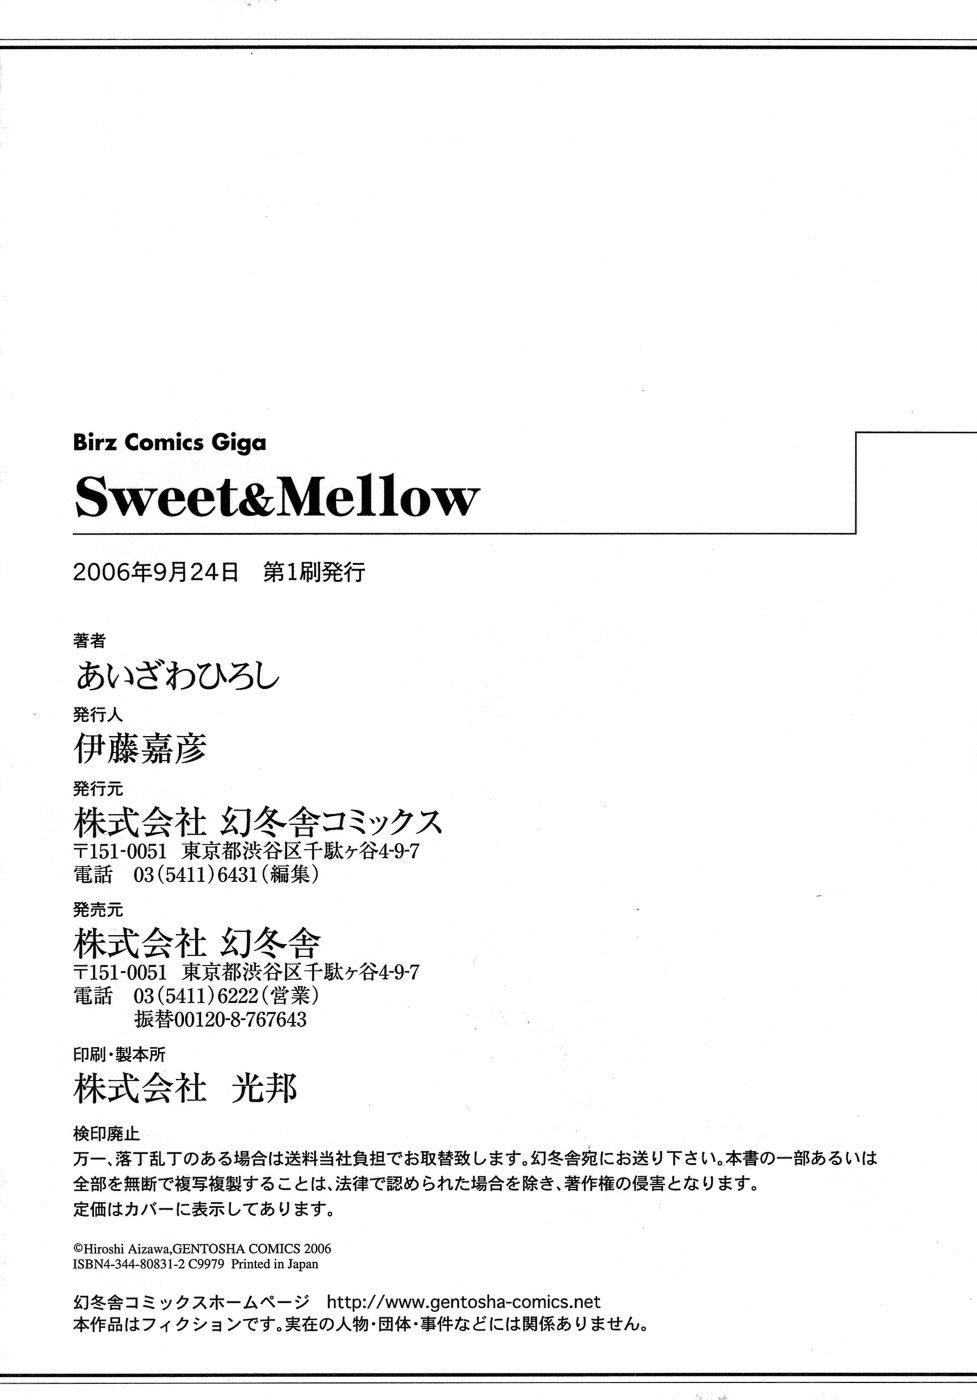 Sweet&Mellow 179